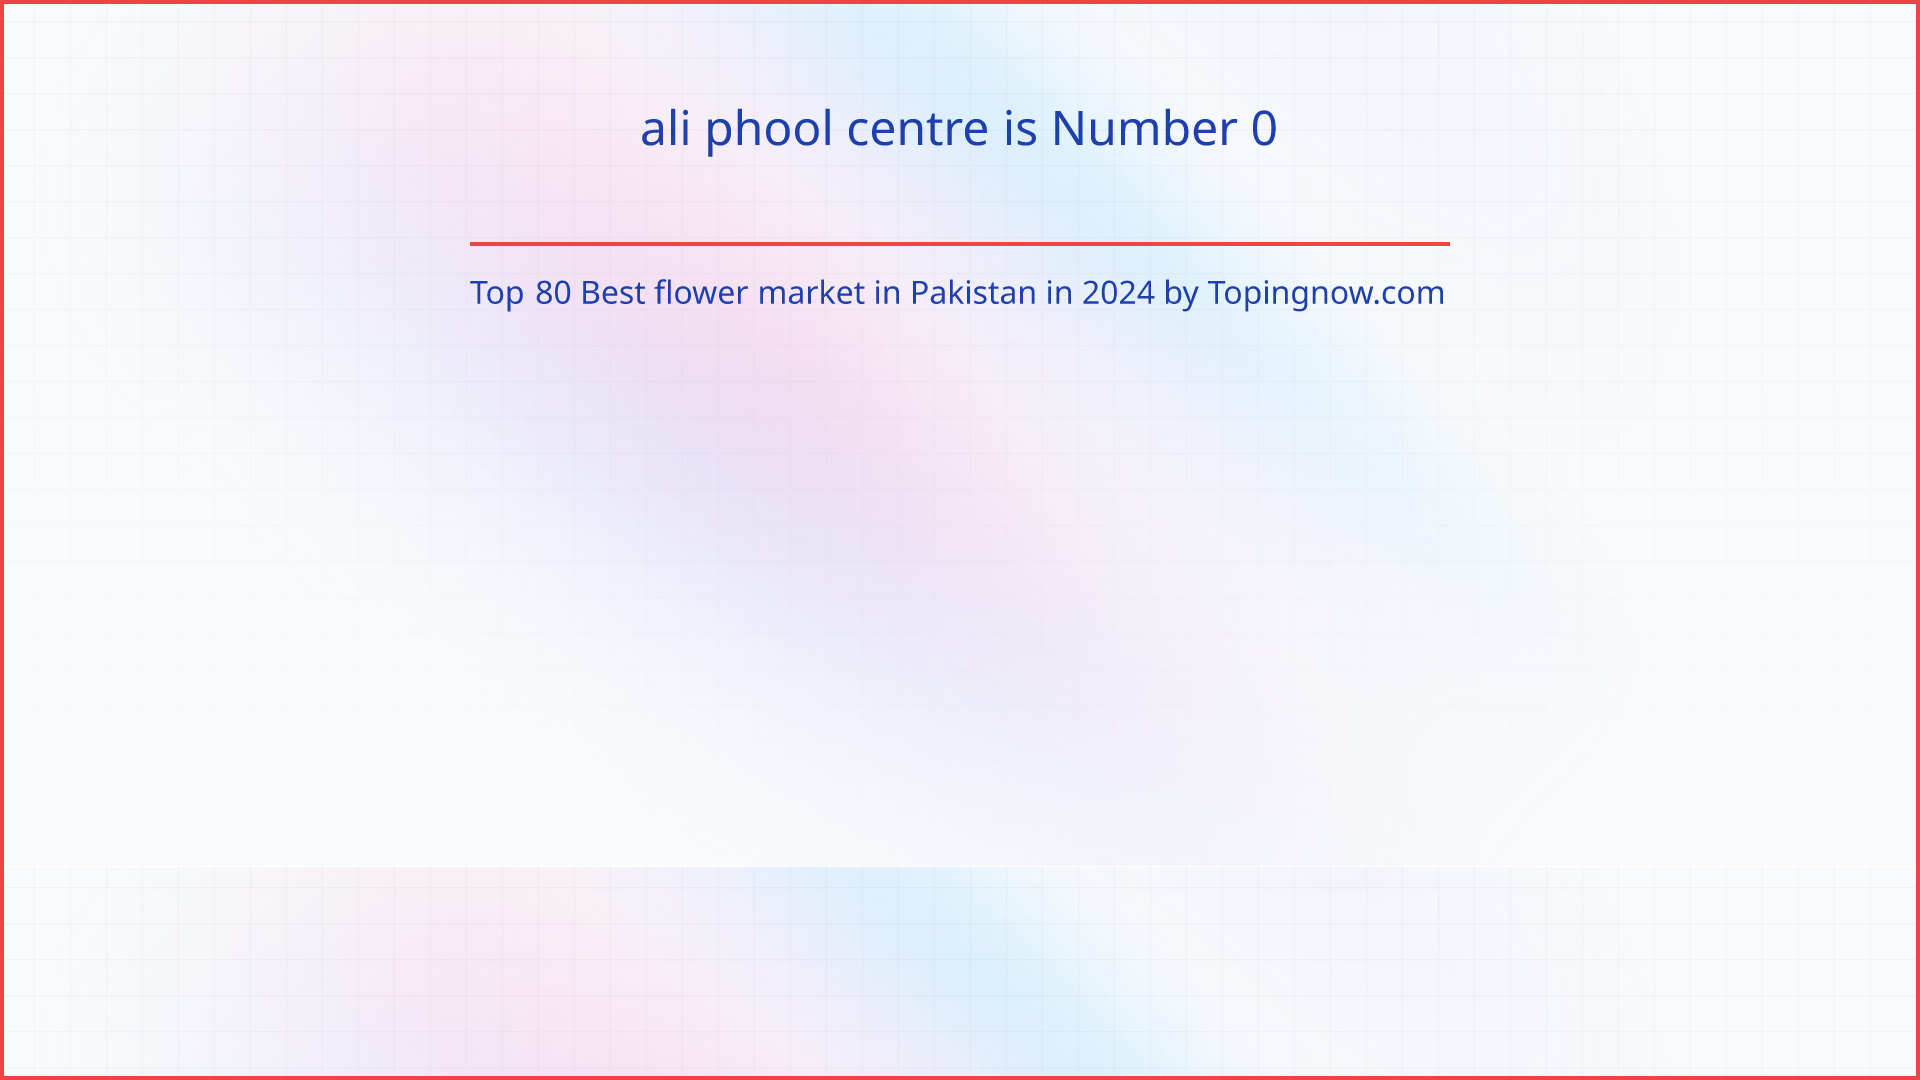 ali phool centre: Top 80 Best flower market in Pakistan in 2024